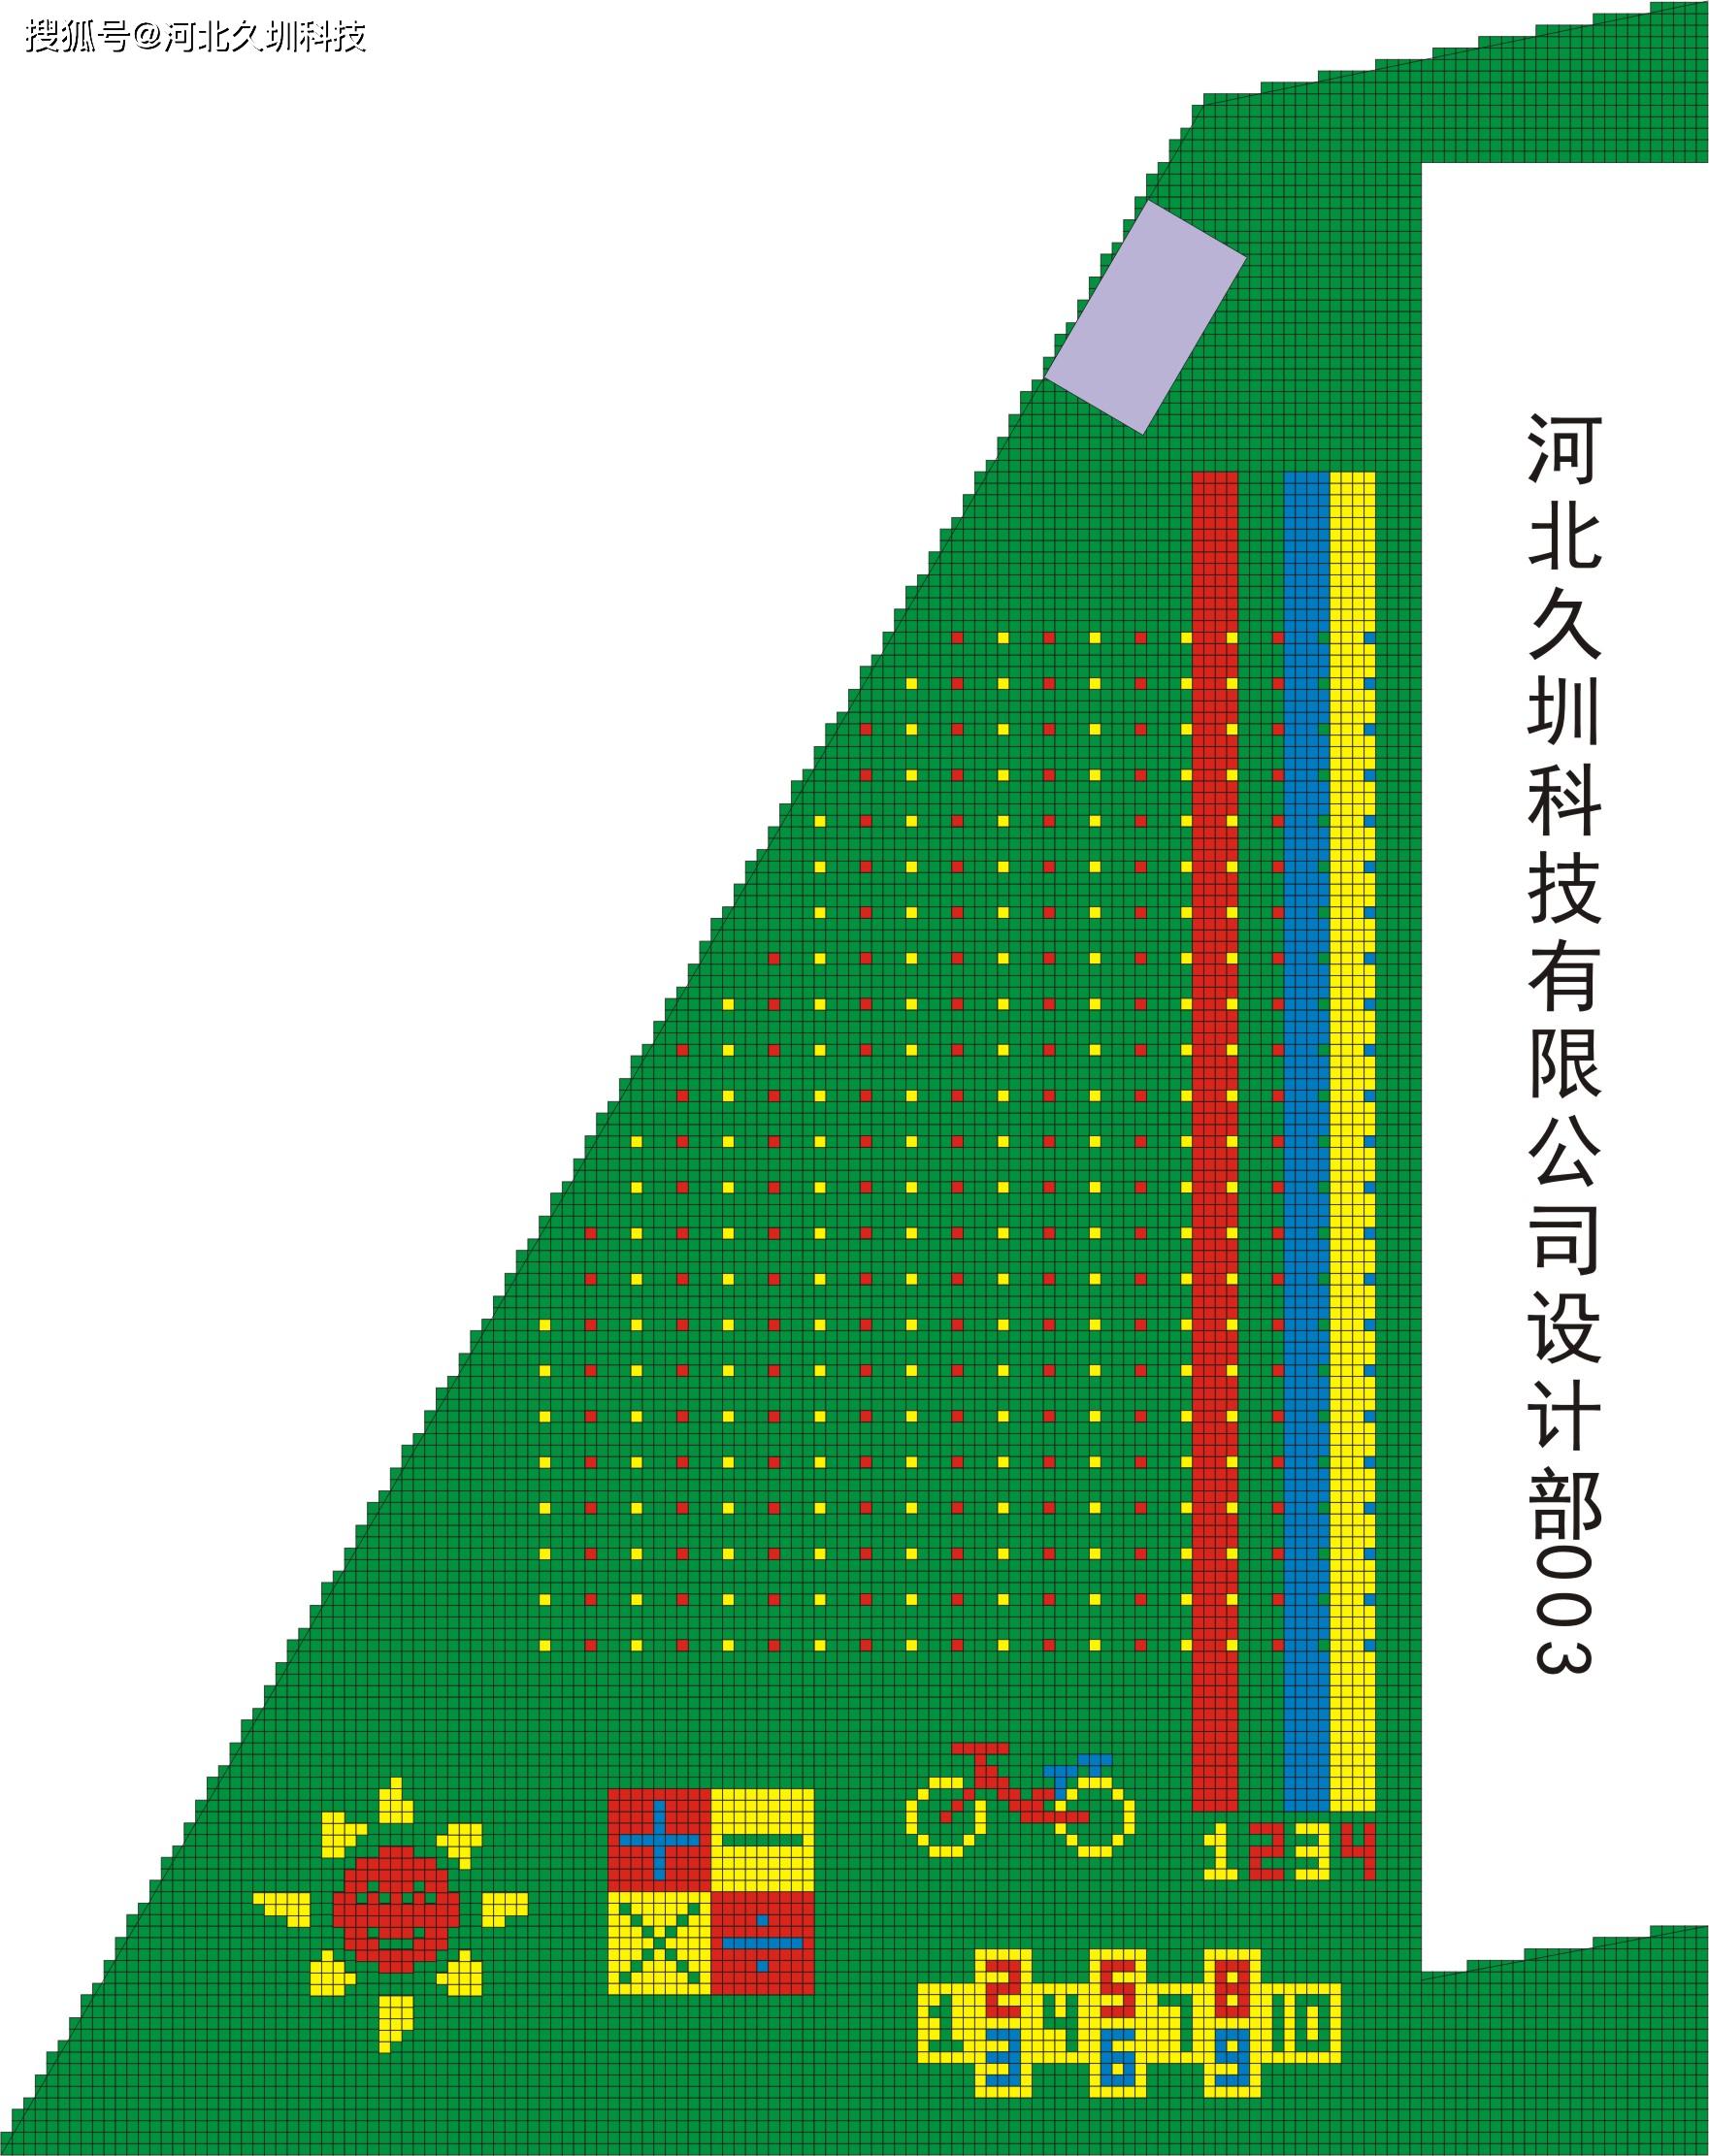 原创河北久圳悬浮拼装地板幼儿园设计图